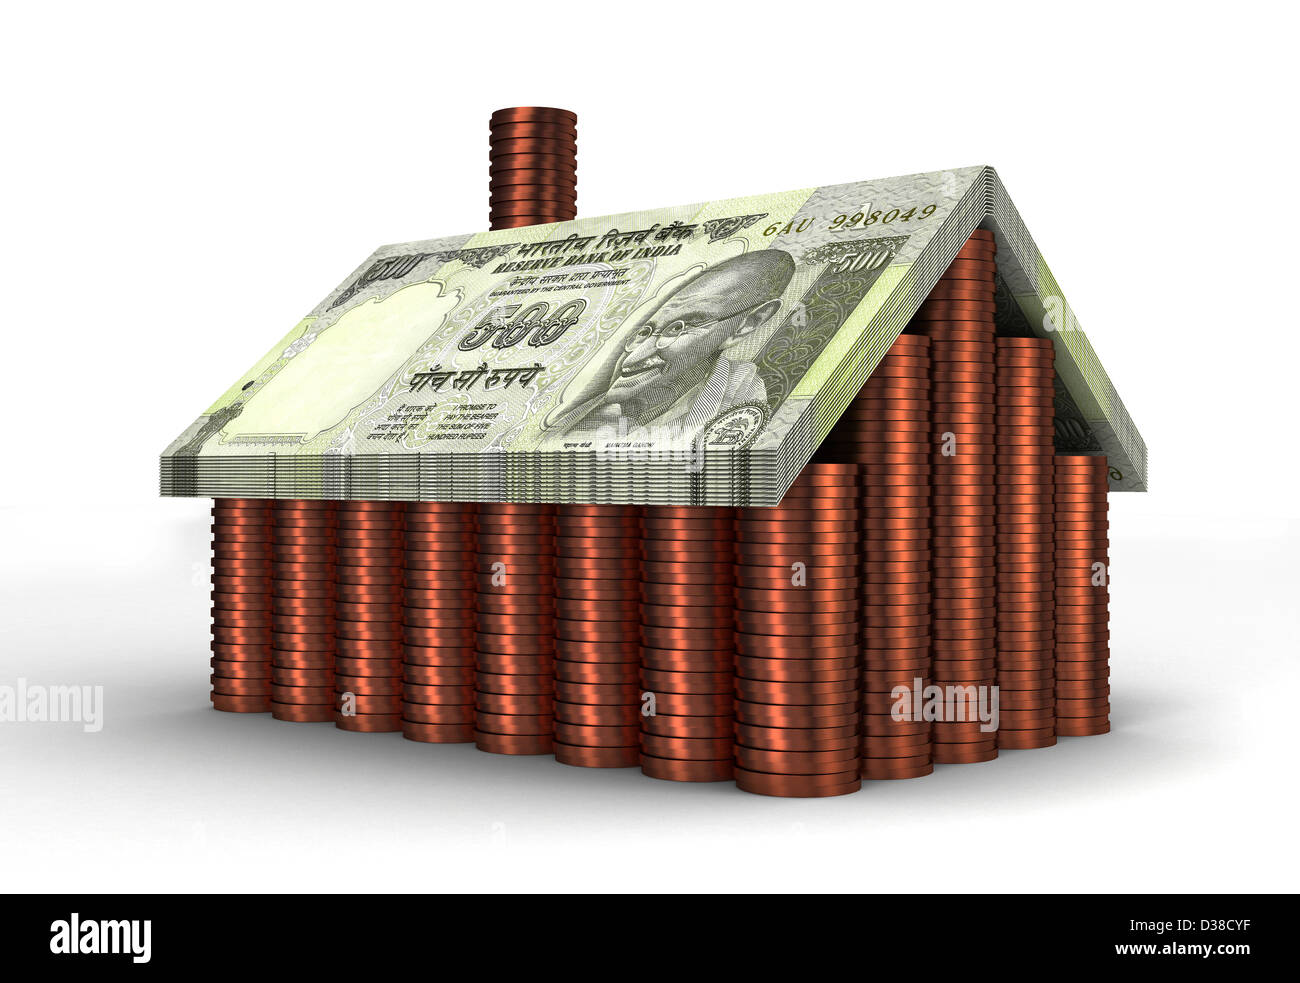 Image d'illustration de maison faite avec de l'argent prêt représentant Banque D'Images